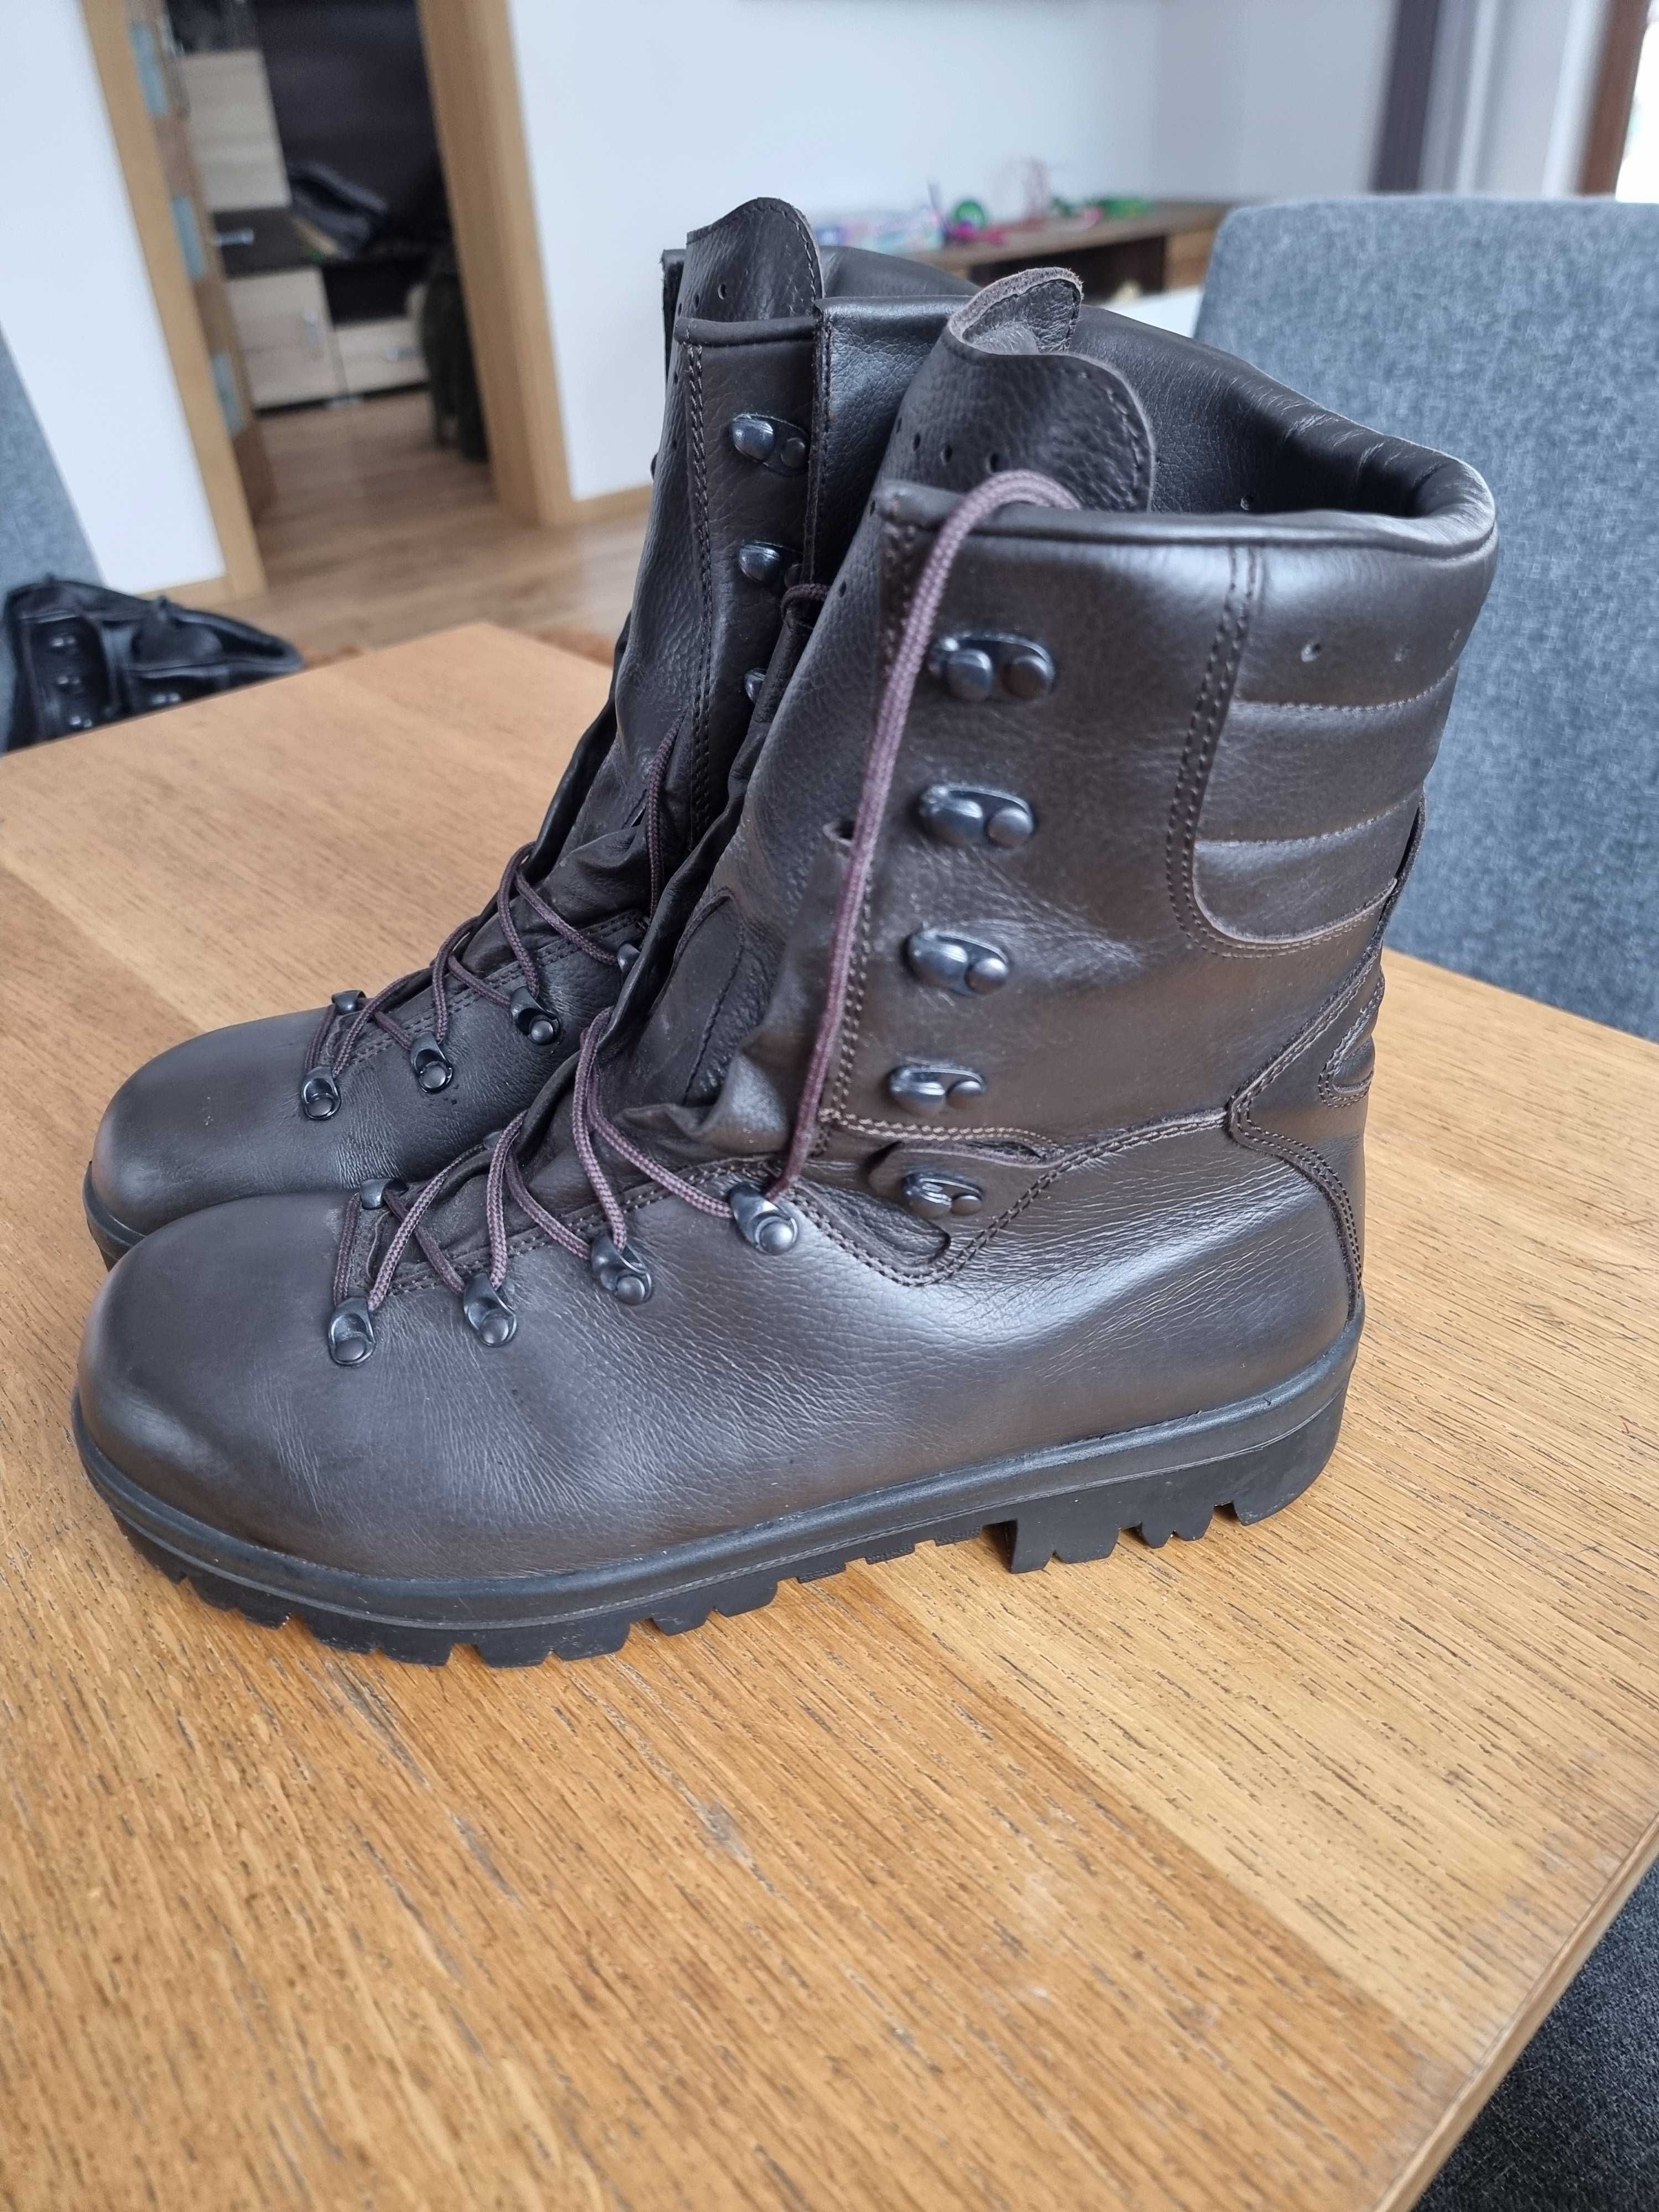 Buty wojskowe zimowe wz 933A/MON roz 30,5 cm, 47